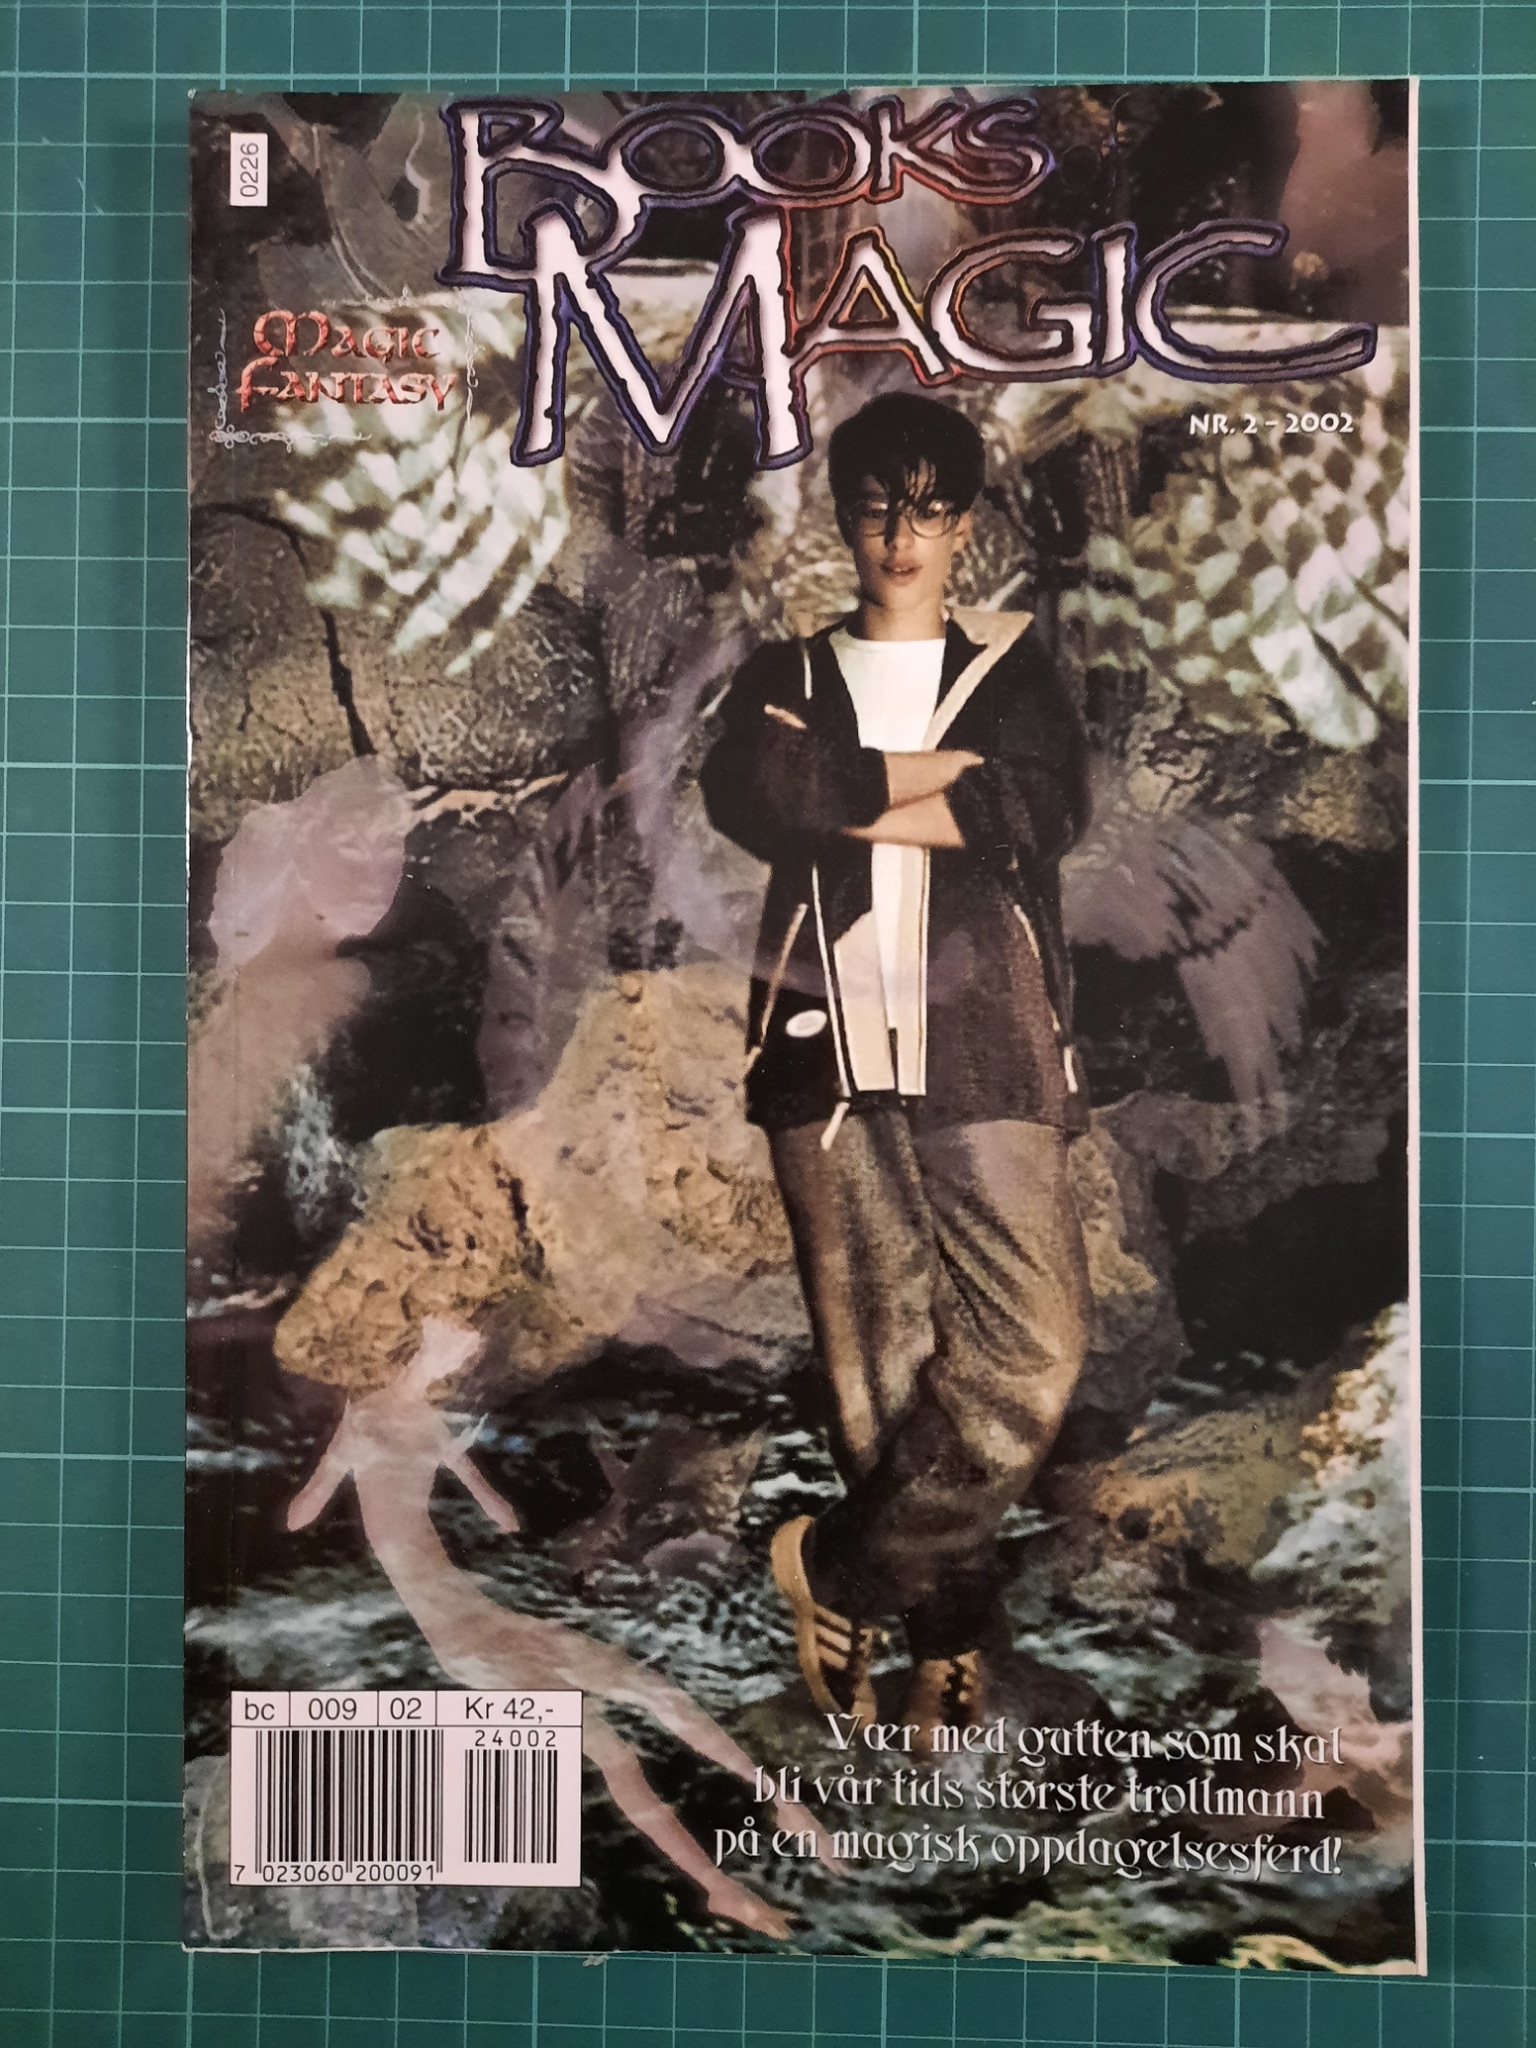 Books of magic 2002 - 02